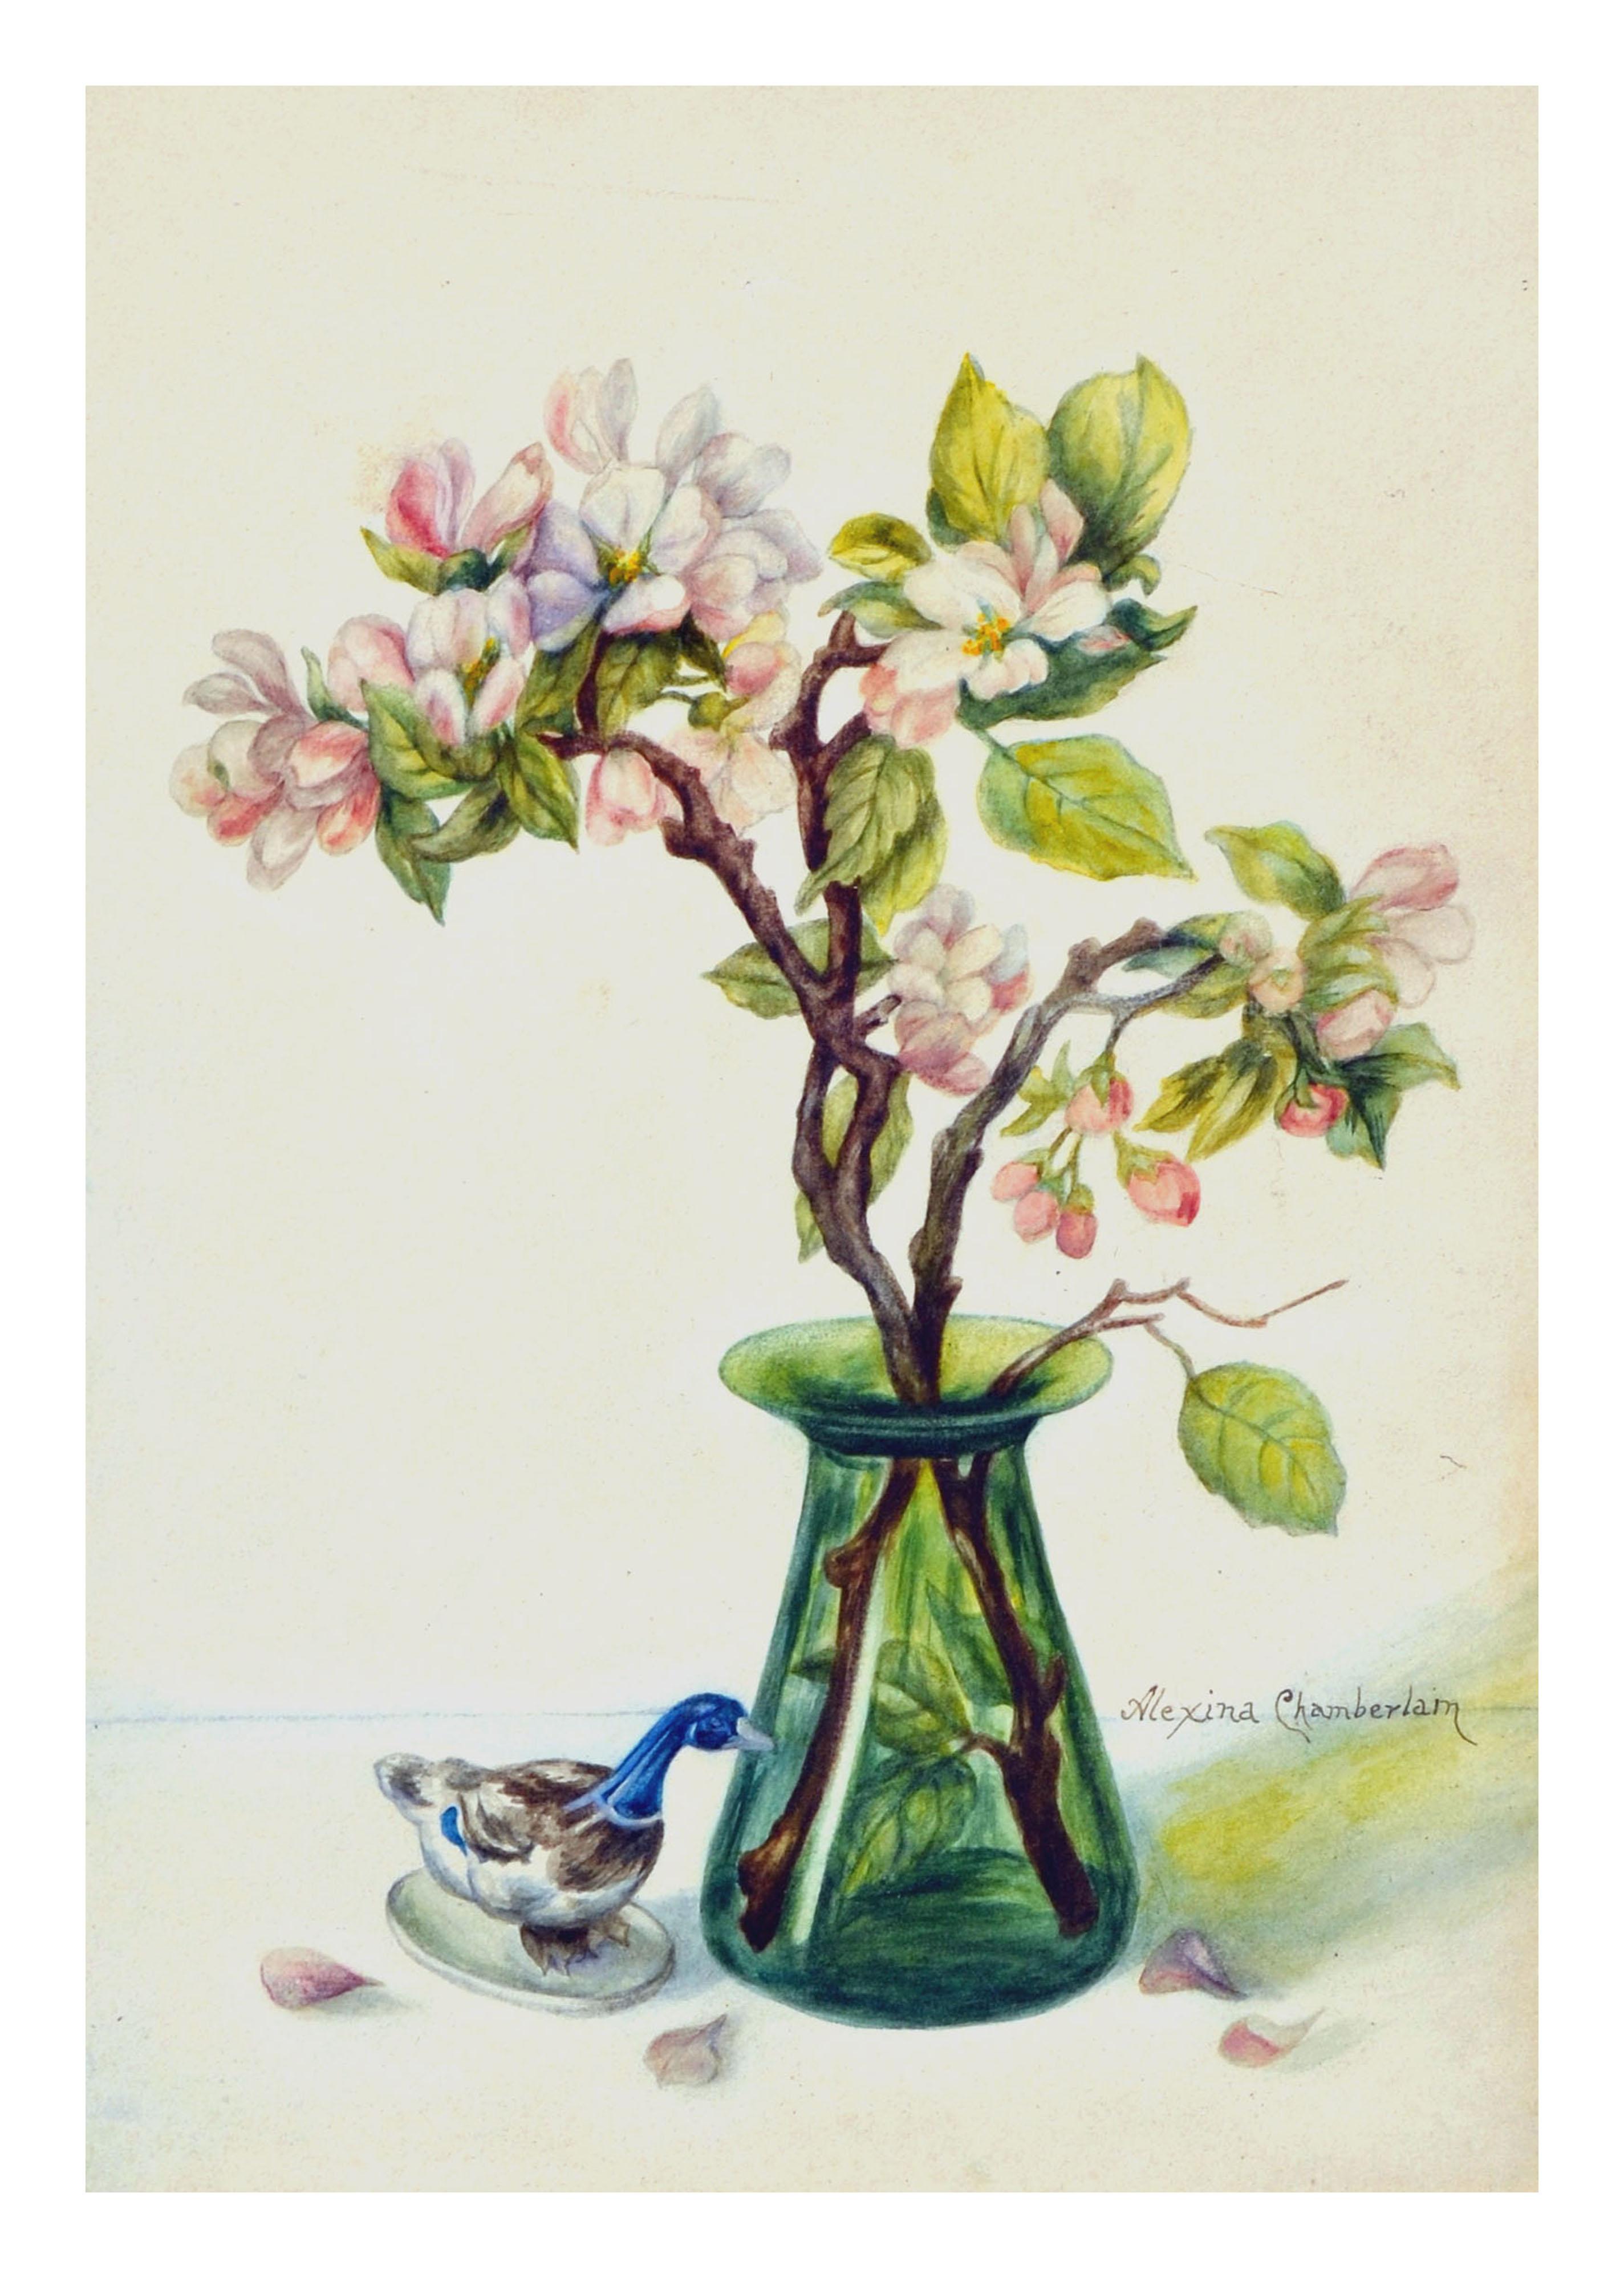 Blumen-Stillleben mit Magnolien und Gänseblümchen  – Art von Alexina Chamberlain